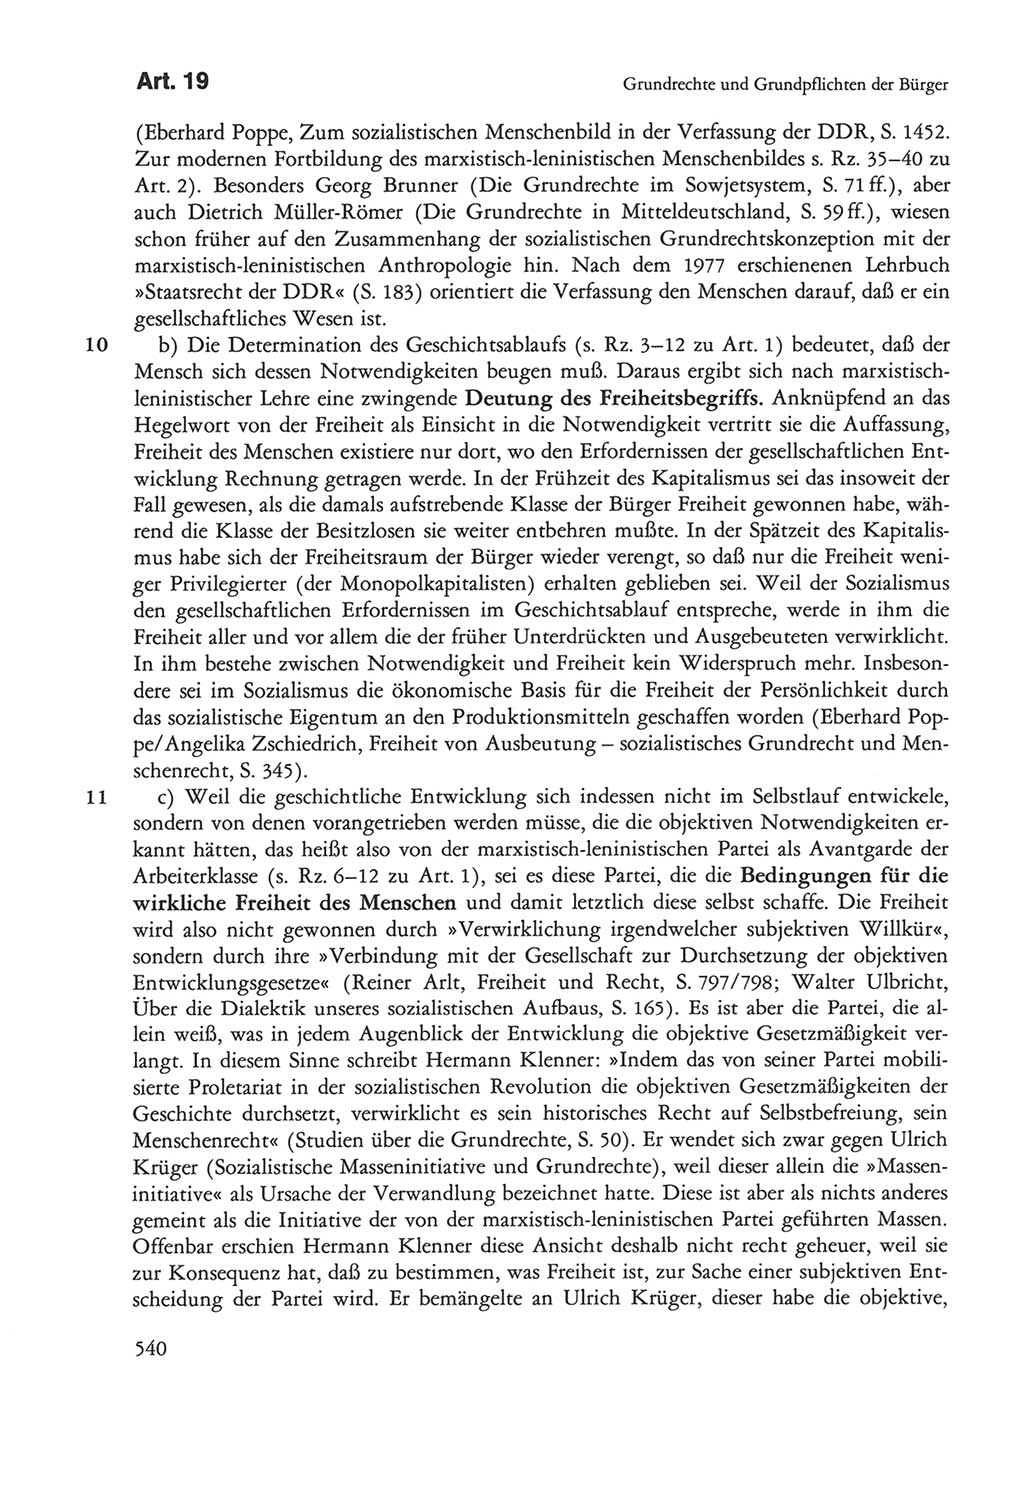 Die sozialistische Verfassung der Deutschen Demokratischen Republik (DDR), Kommentar mit einem Nachtrag 1997, Seite 540 (Soz. Verf. DDR Komm. Nachtr. 1997, S. 540)